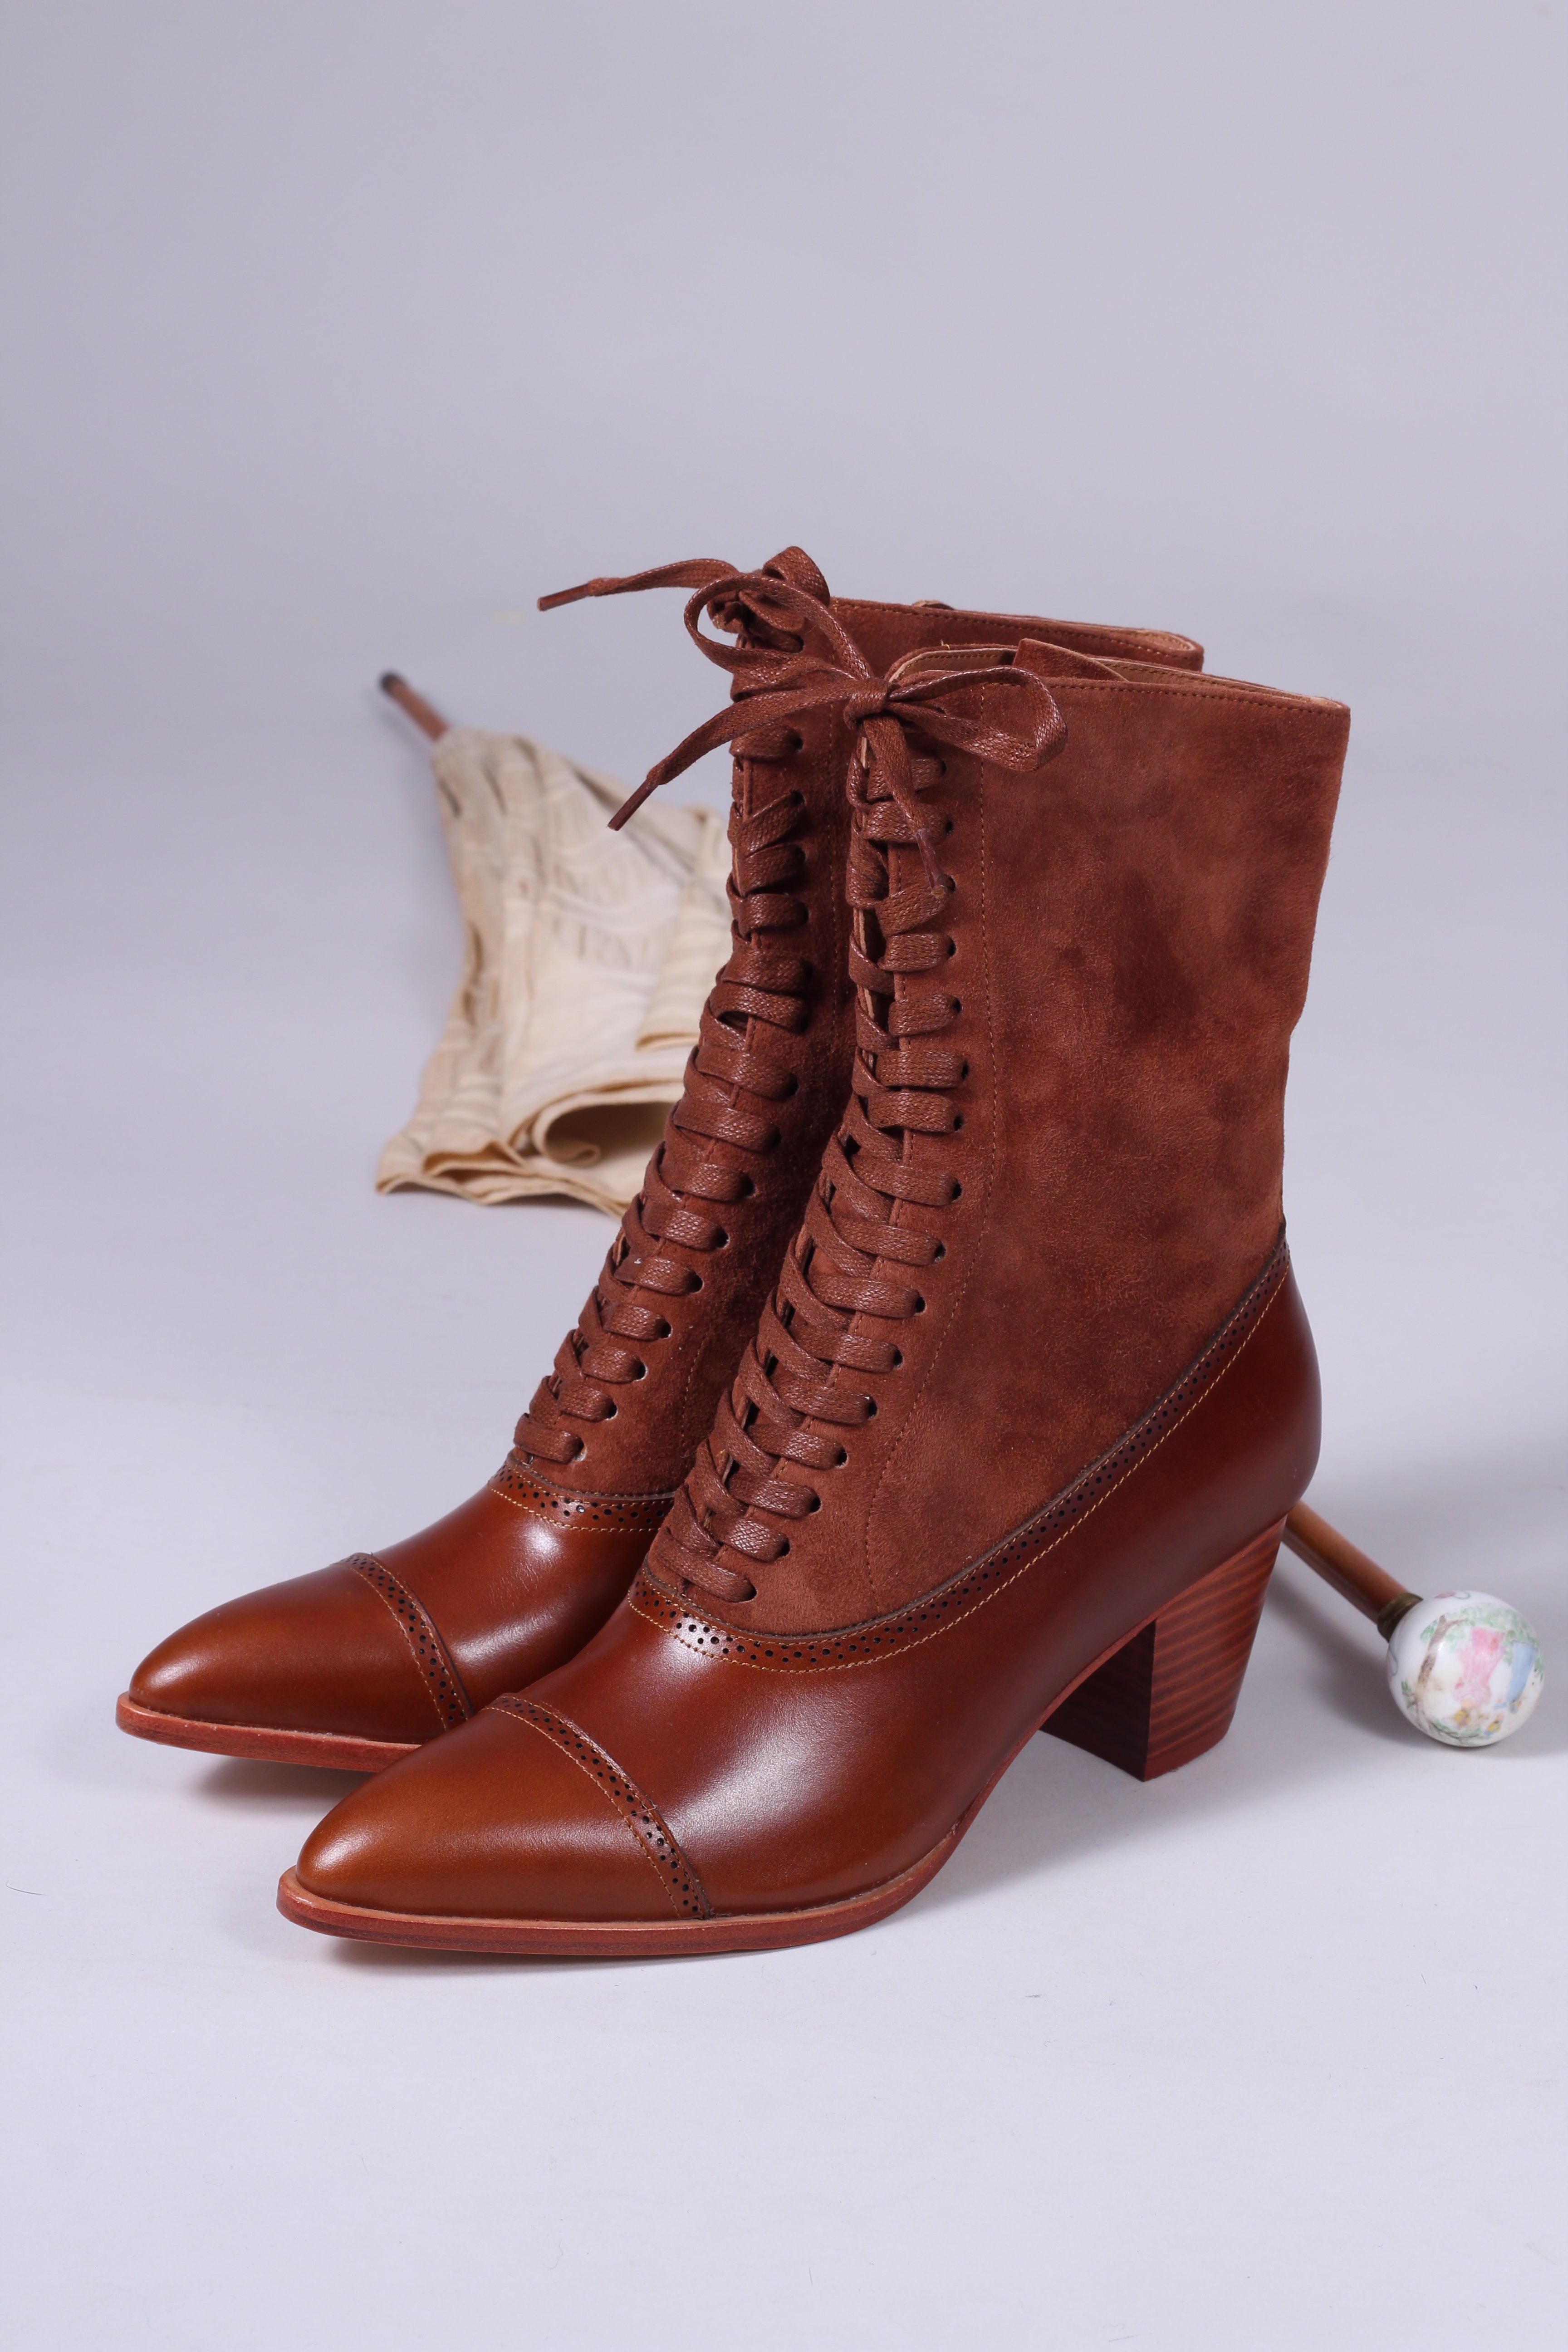 Edwardianske støvler 1900-1910 - cognac brun- Victoria